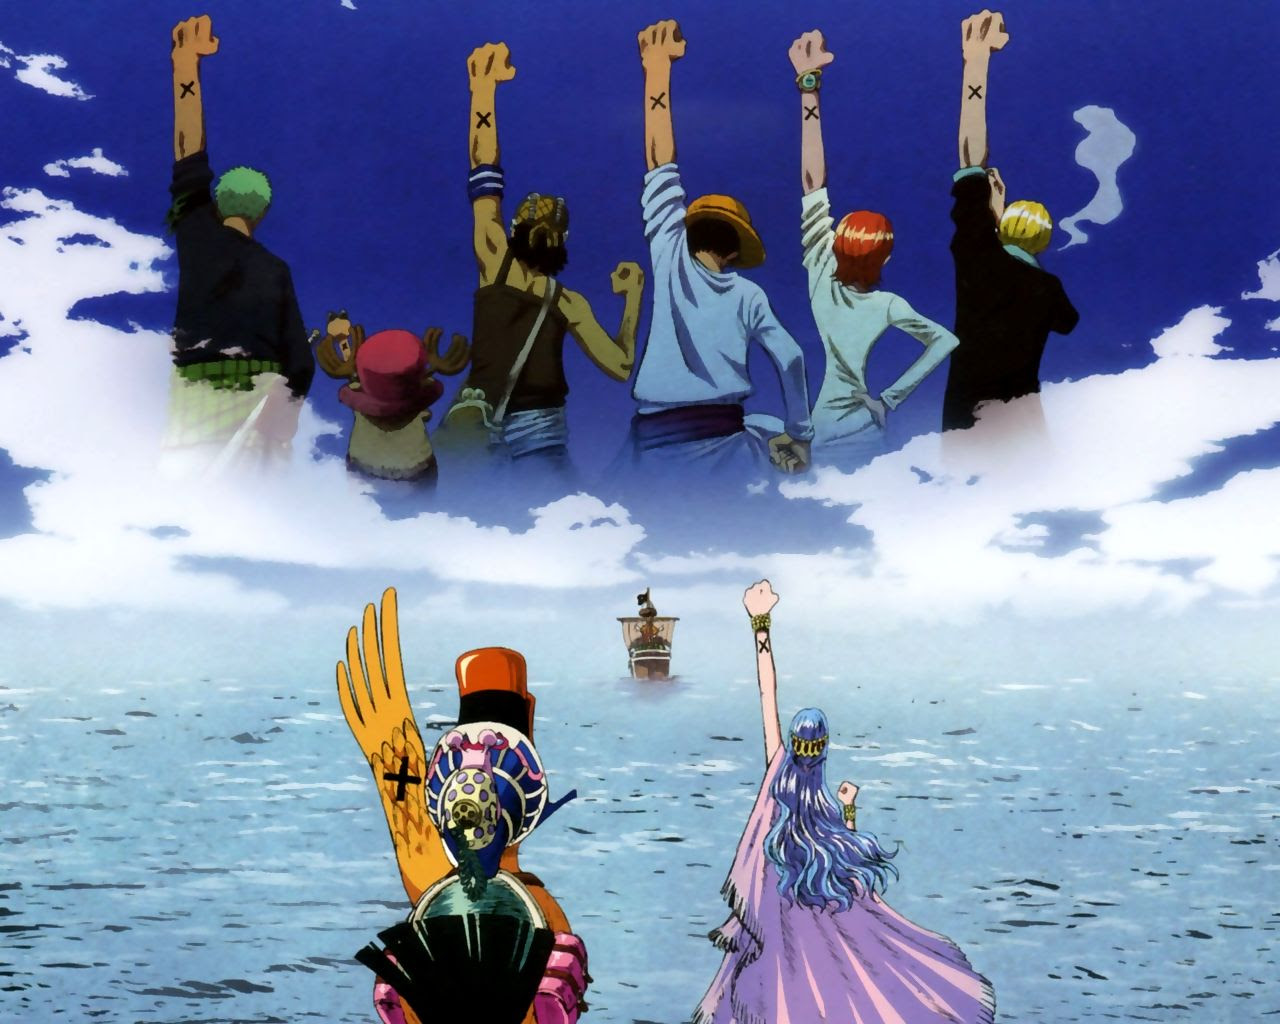 上one Piece 壁紙 シンプル アニメ画像について